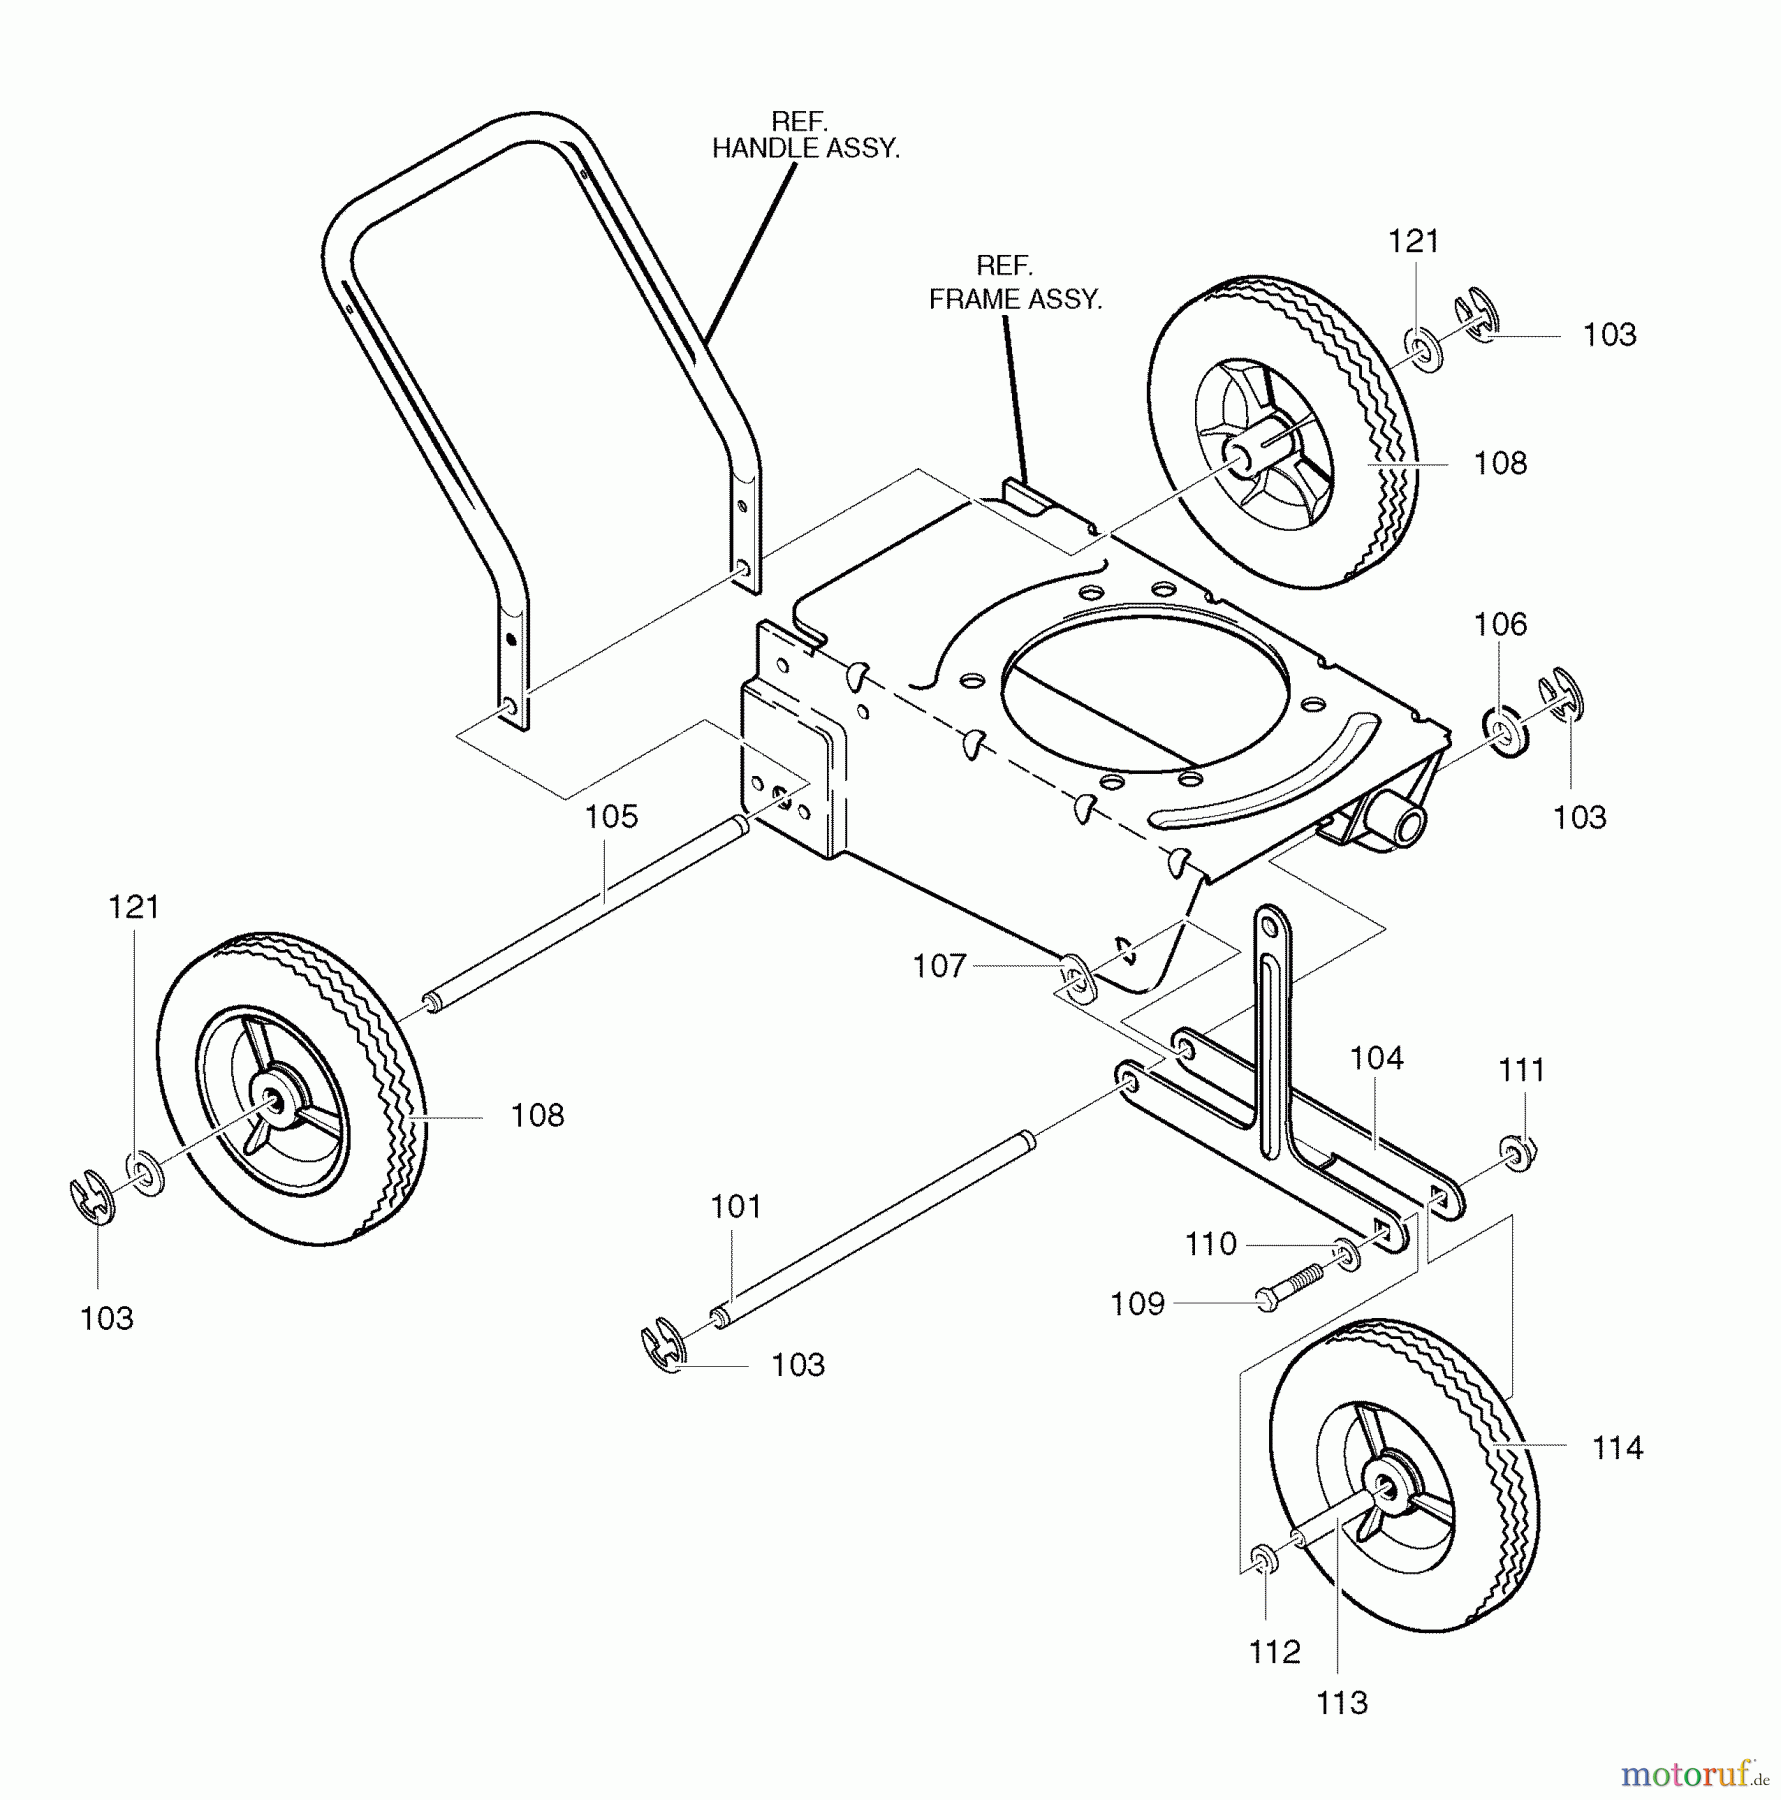  Murray Kantenschneider 536.772321 (77232100NC) - Craftsman Edger (2007) (Sears) Wheel Assembly